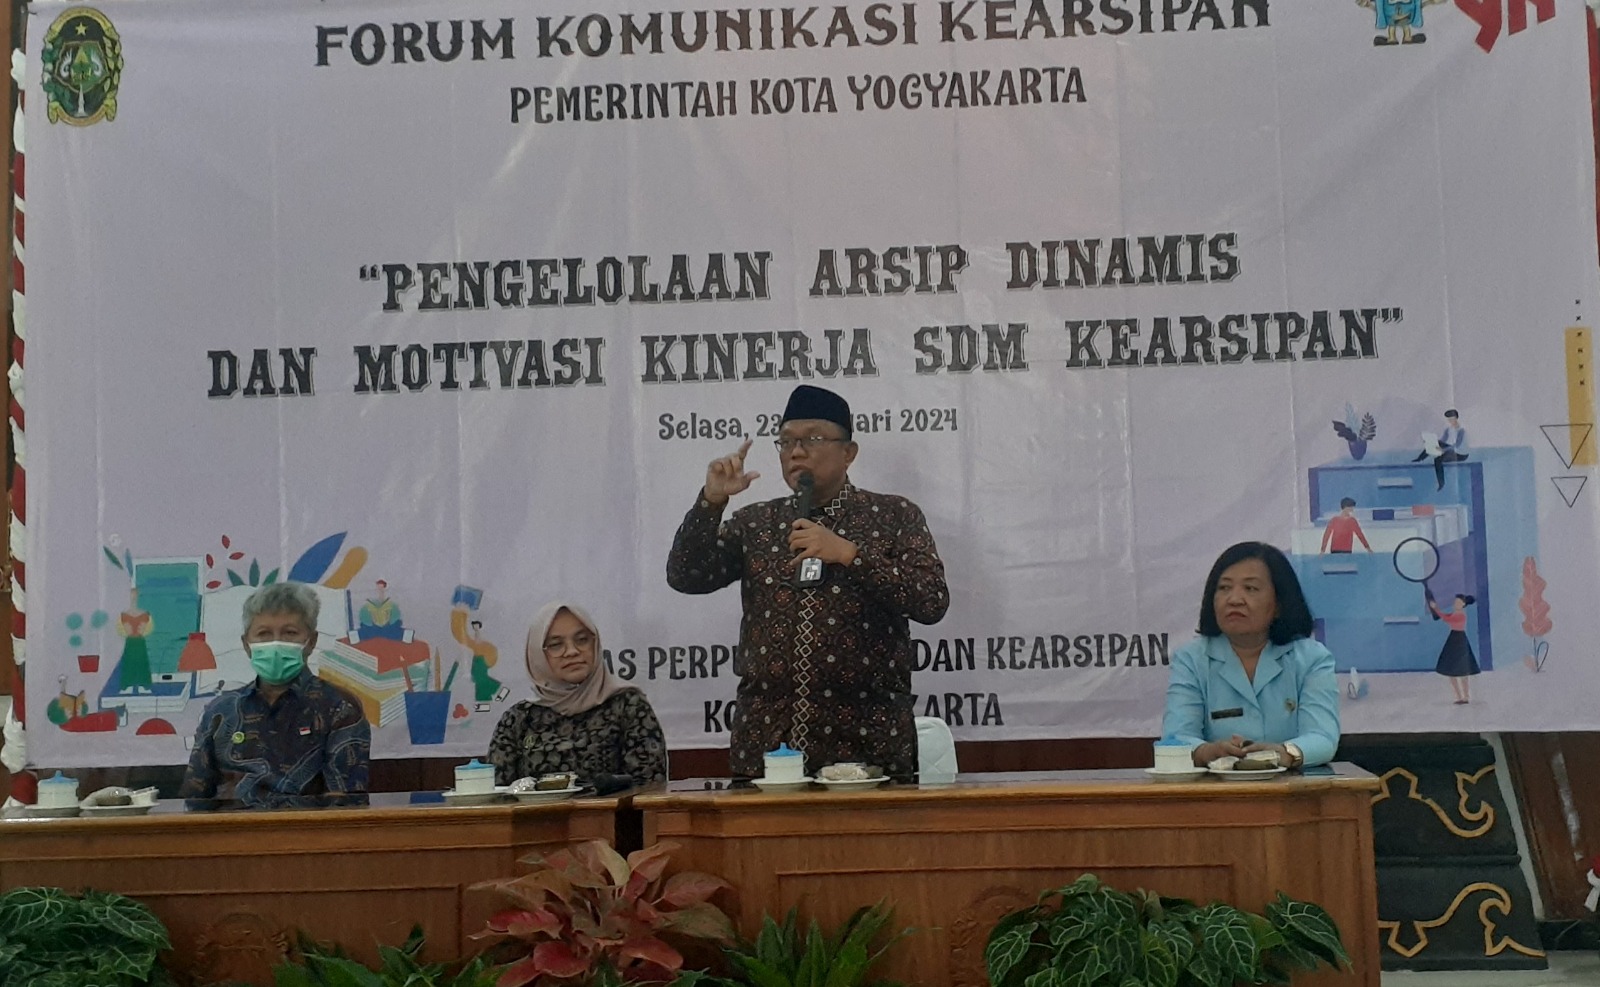 Forum Komunikasi Kearsipan Kota Yogyakarta